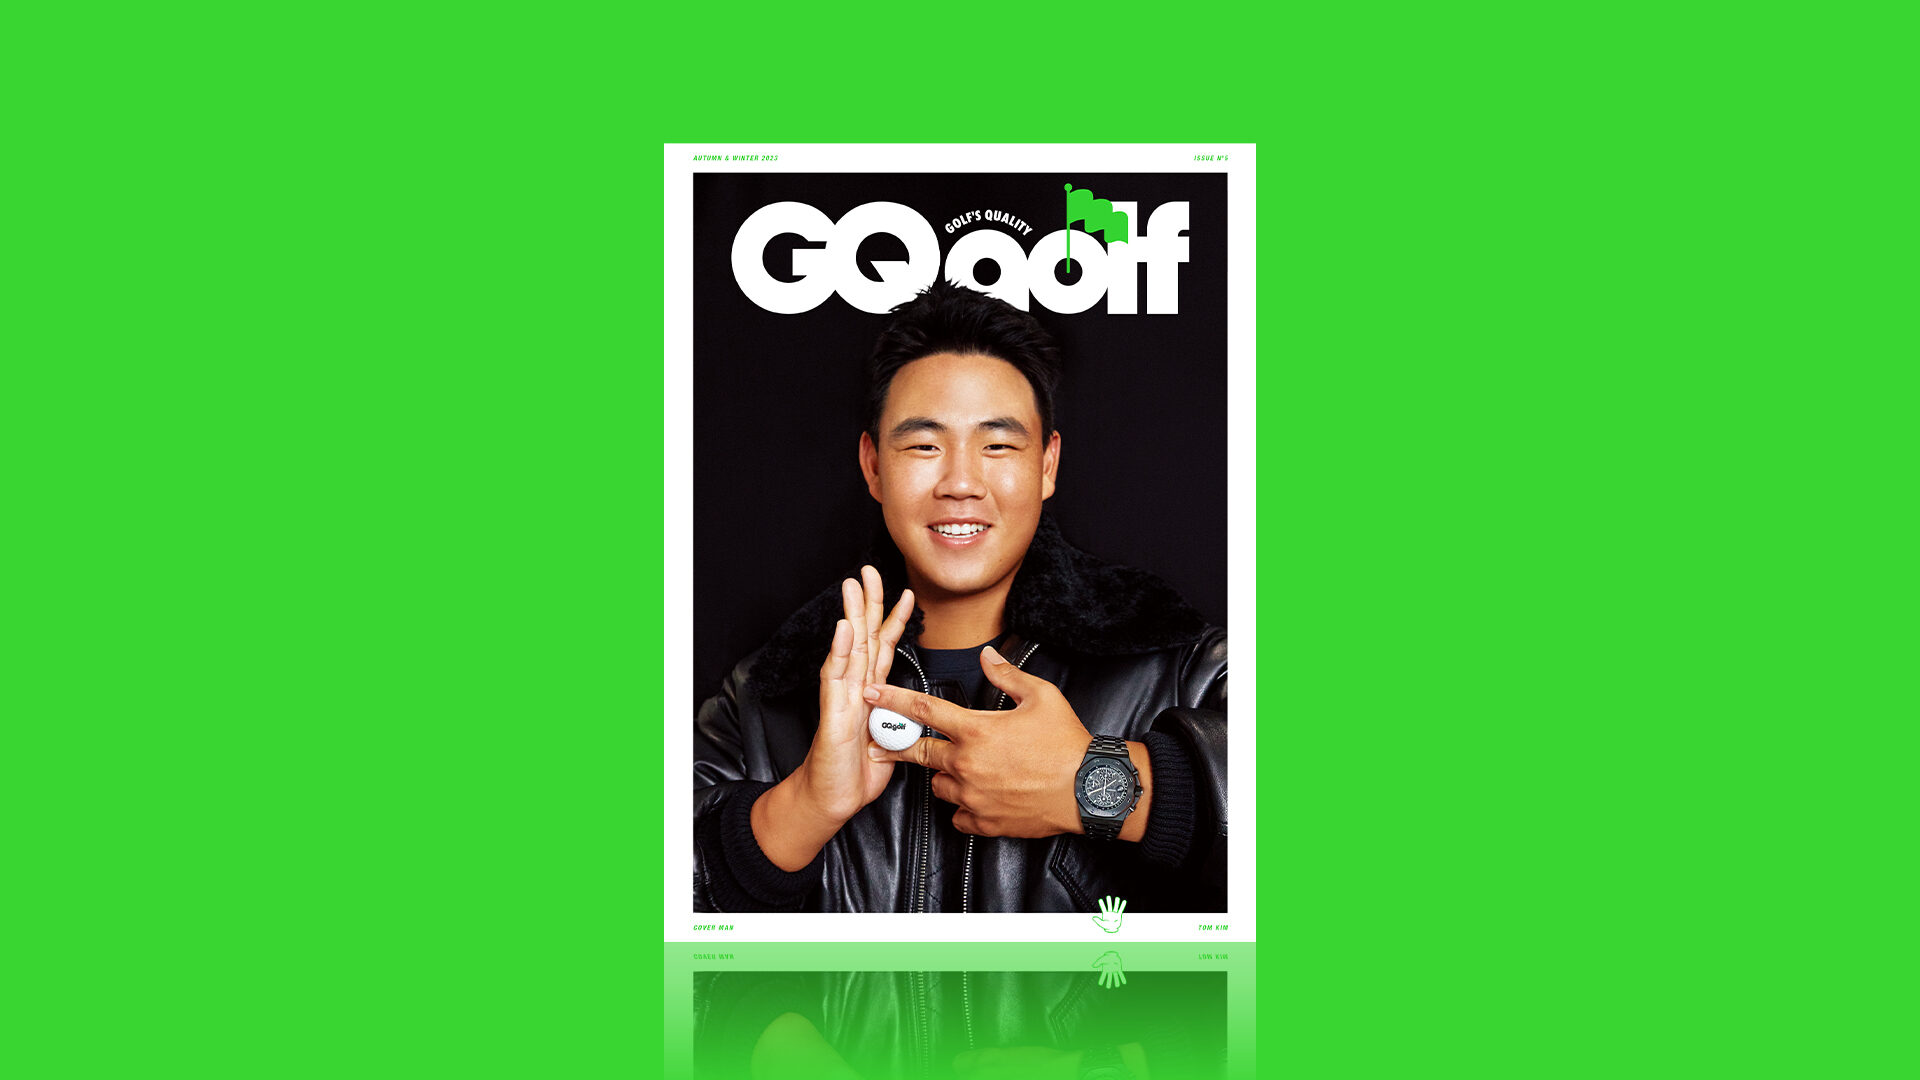 톰 킴 김주형과 함께한 다섯 번째 지큐 골프 커버와 목차 공개(GQ Golf Cover with Tom Kim)